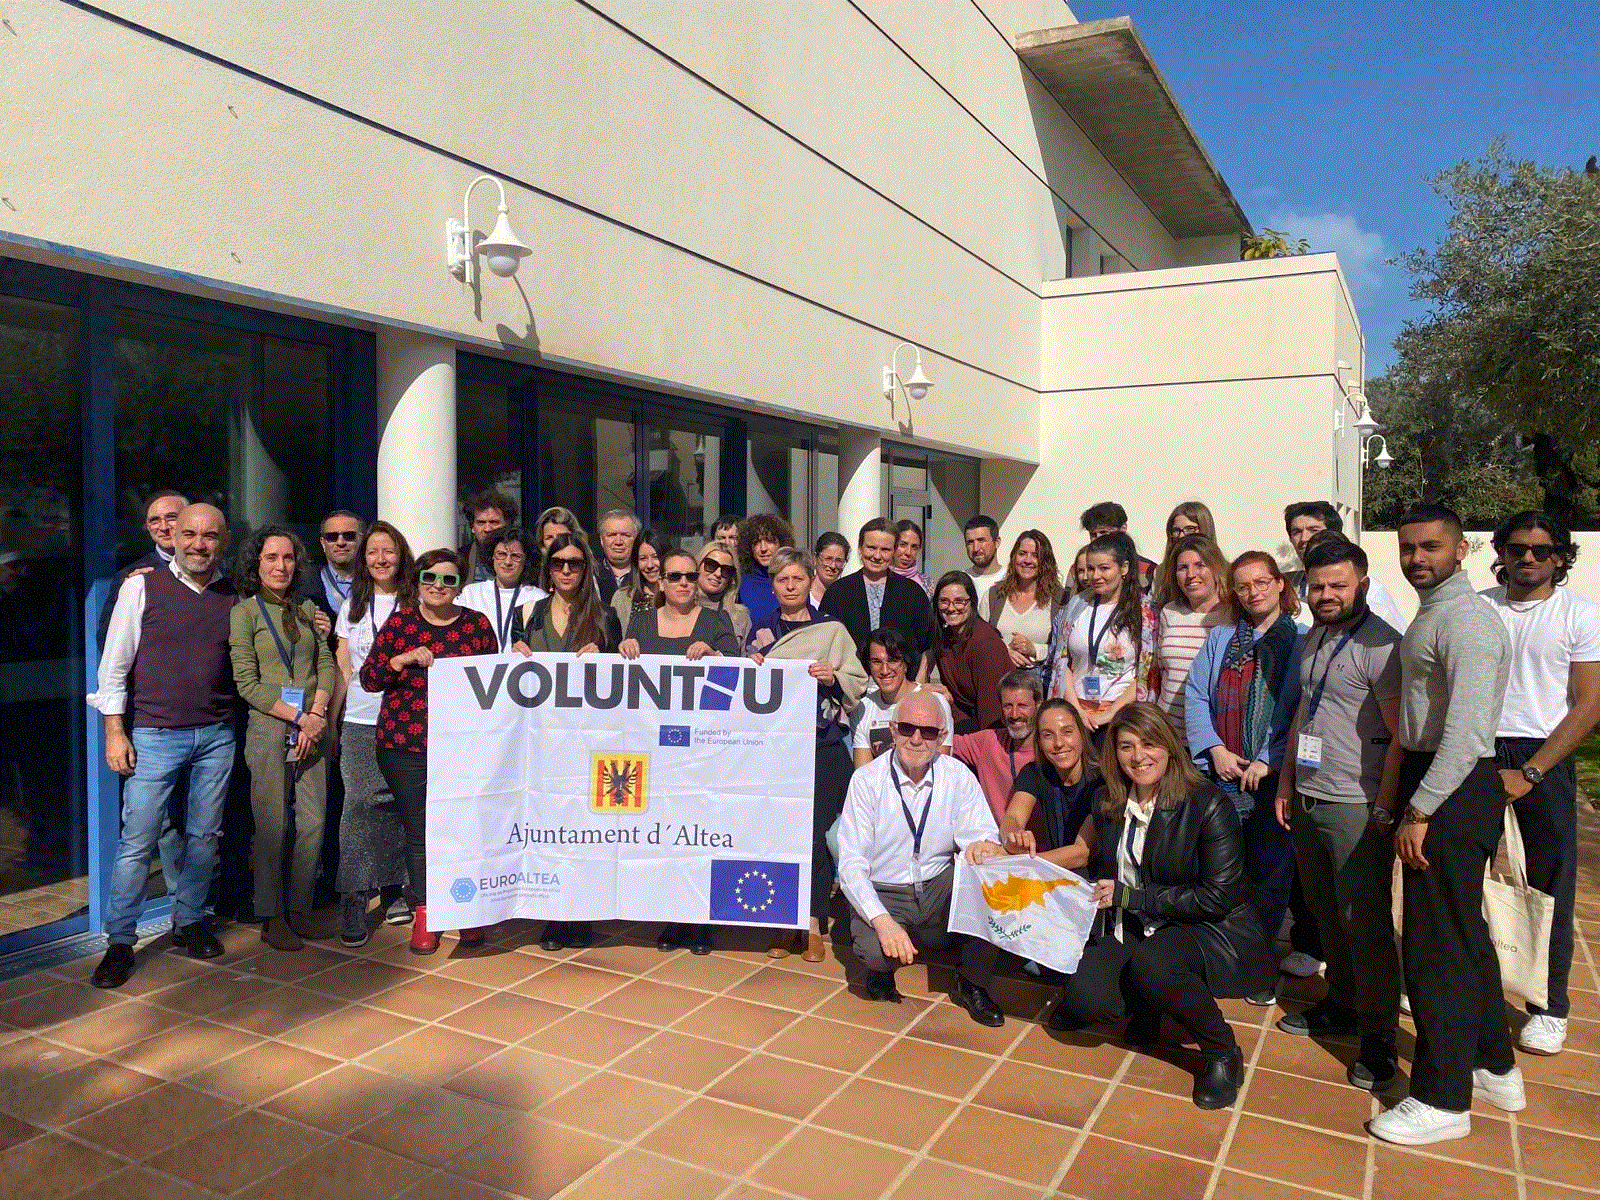 Ολοκληρώθηκε η συνάντηση του Ευρωπαϊκού προγράμματος VOLUNTEU στην πόλη ΑΛΤΕΑ της Ισπανίας (φώτο)